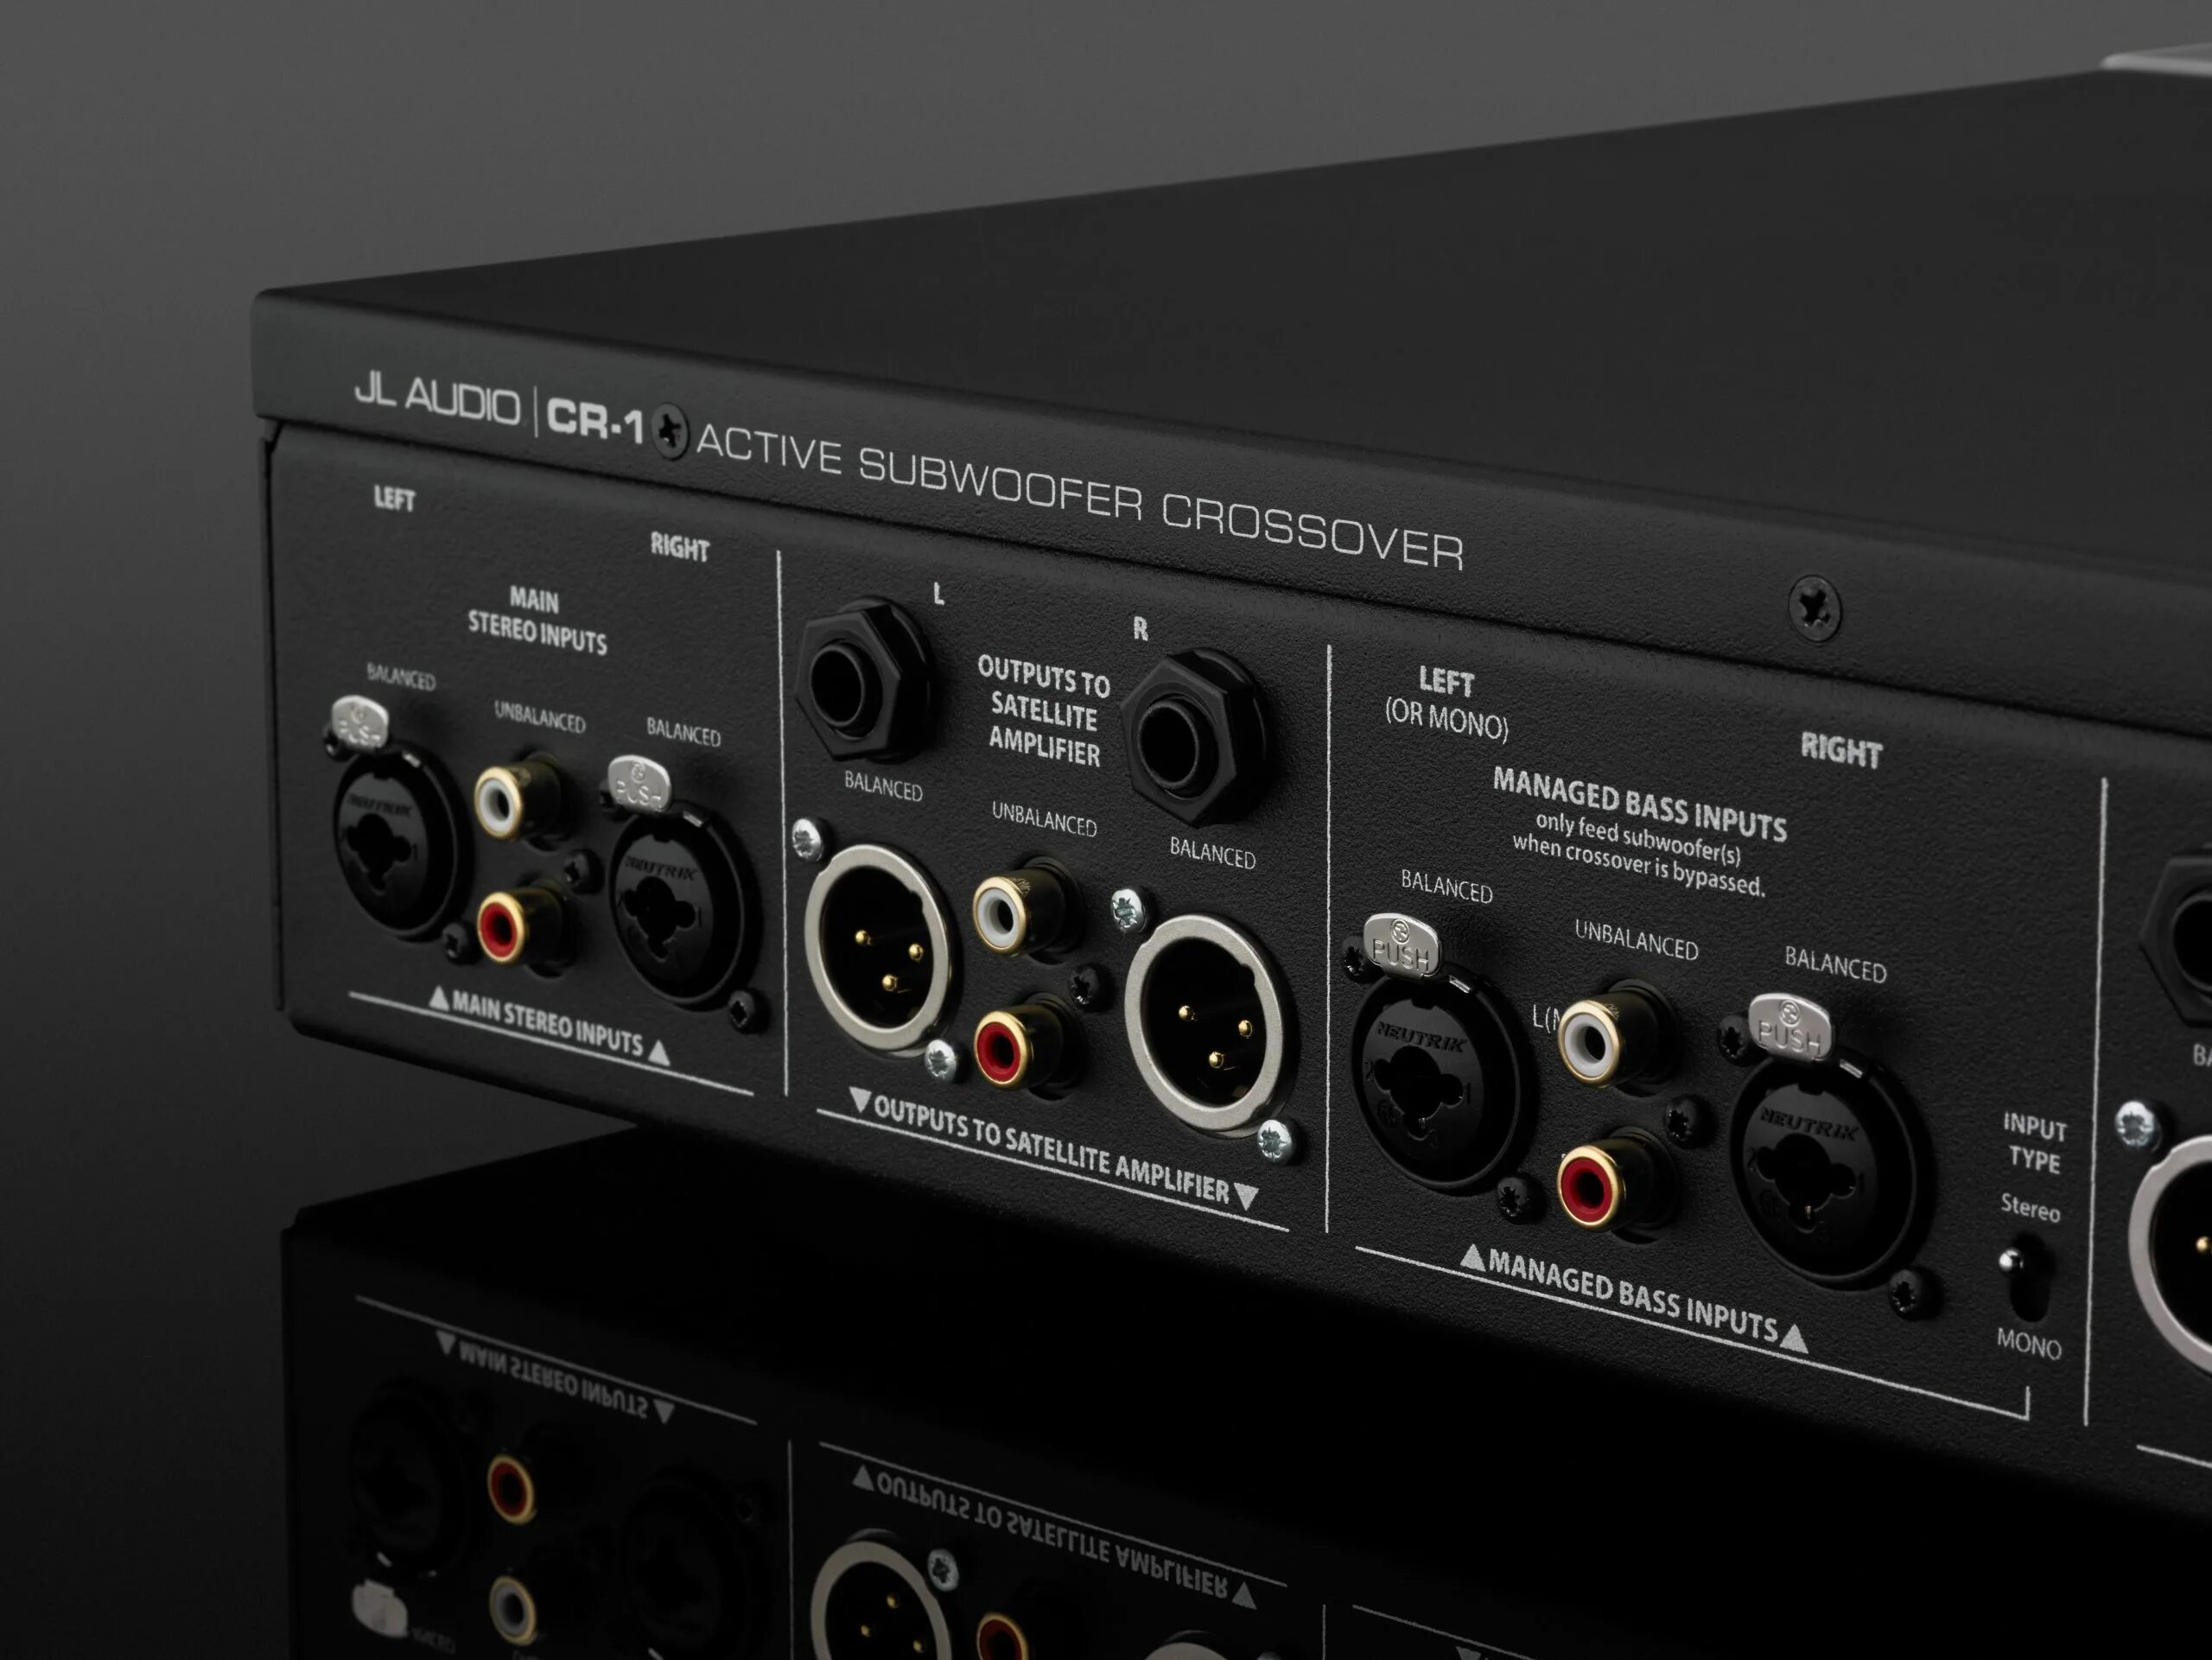 Jl Audio CR-1. Stereo Crossover sc12. Acoustic Audio cr12. Усилитель идеал av2432.